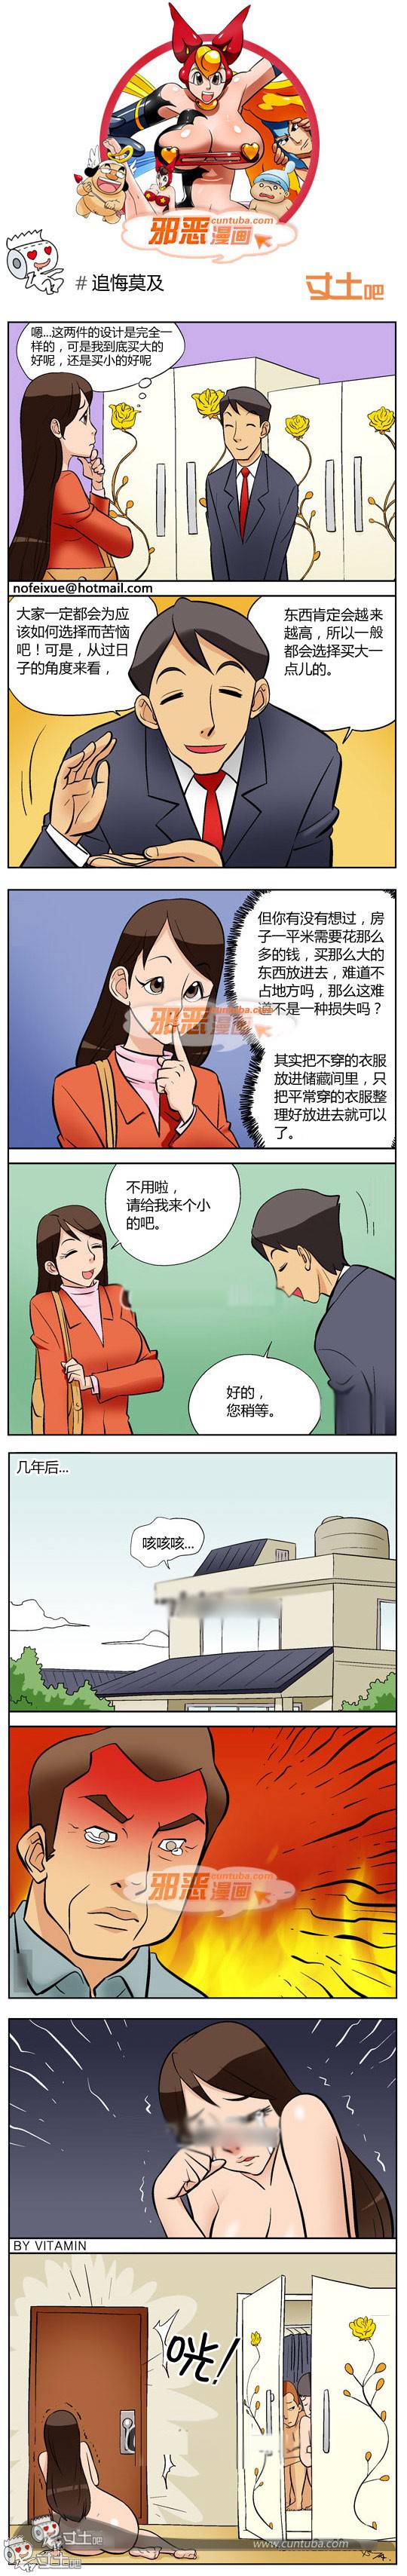 邪恶漫画爆笑囧图第272刊：女人无处不在的诱惑